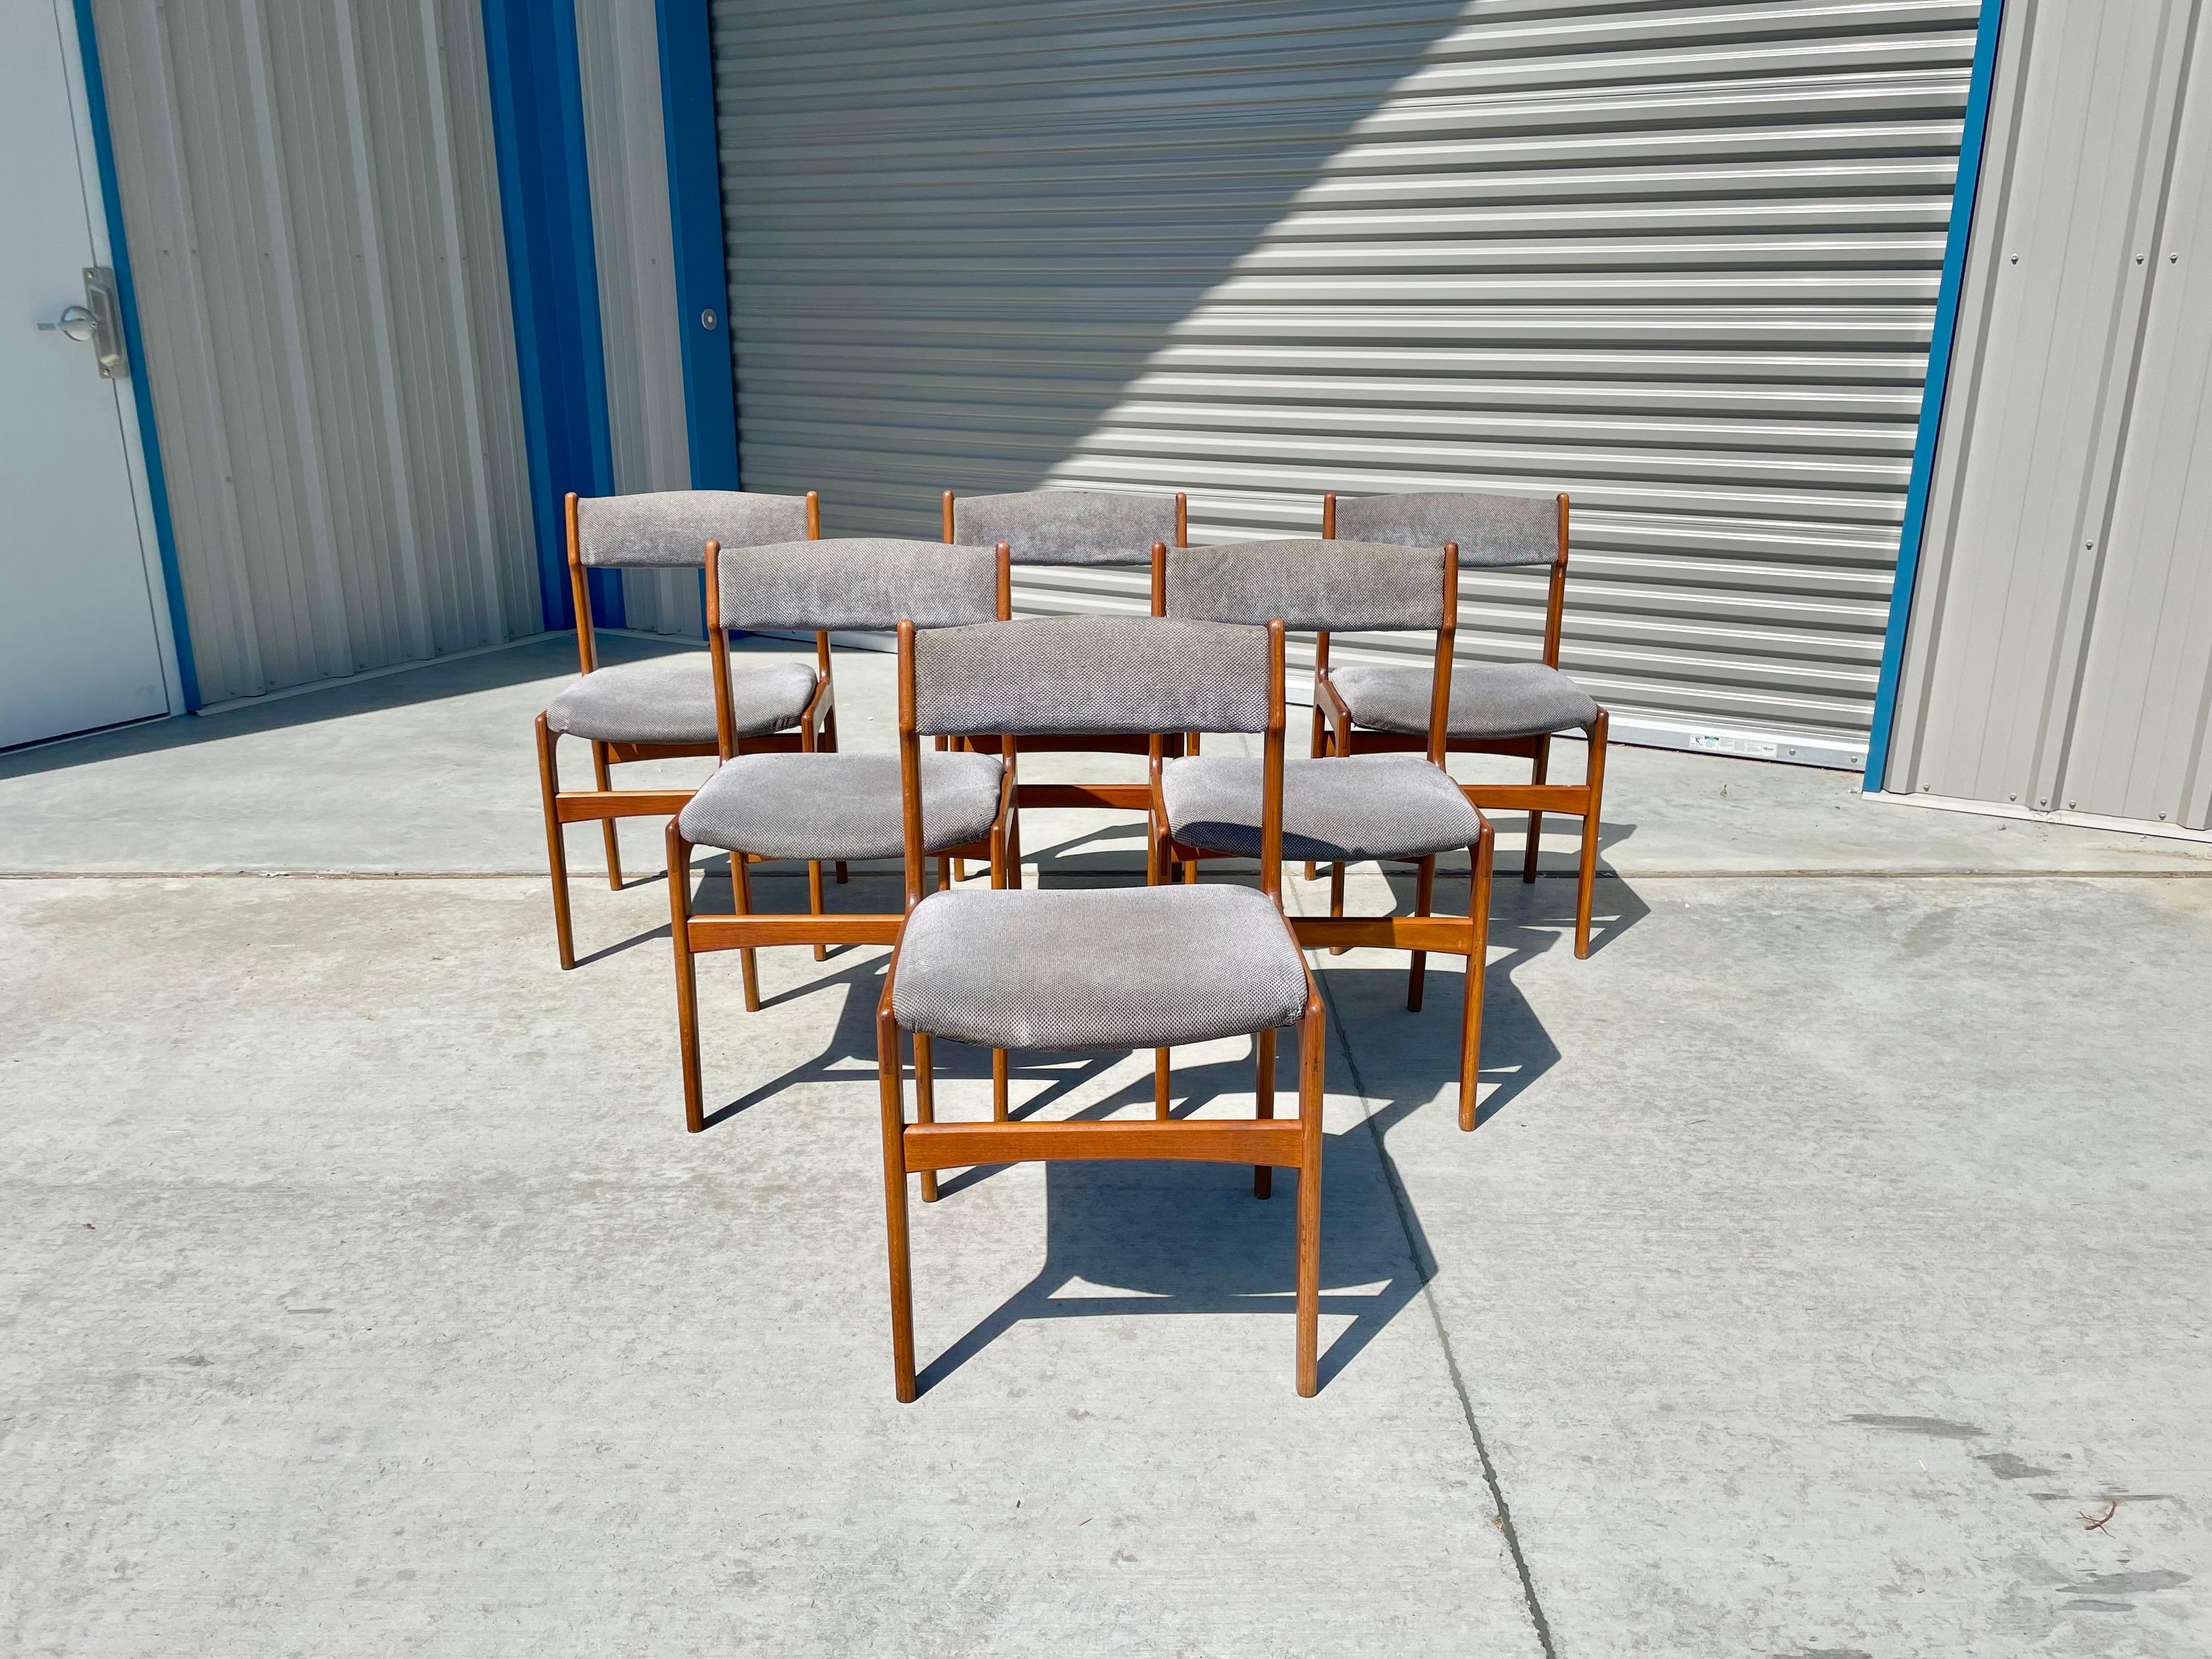 Die modernen dänischen Esszimmerstühle aus Teakholz wurden um 1960 in Dänemark entworfen und hergestellt. Diese atemberaubenden Esszimmerstühle verfügen über ein stabiles Teakholzgestell, das für einen raffinierten und eleganten Look sorgt. Die